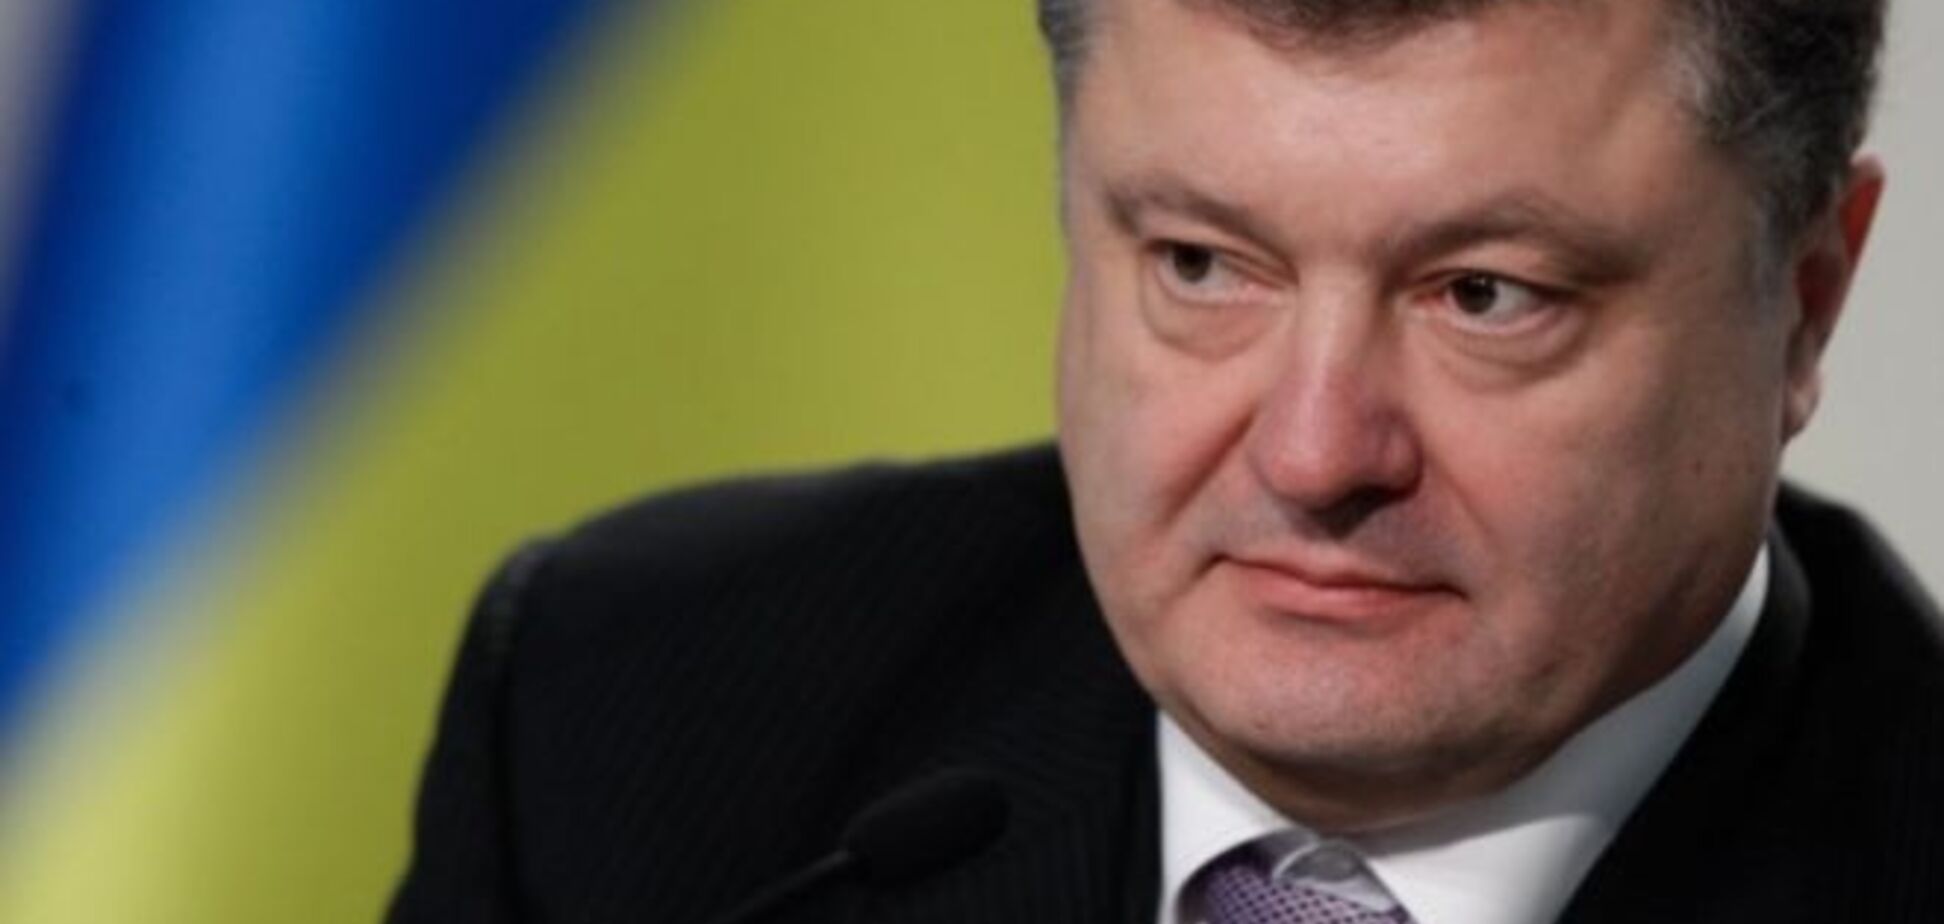 Порошенко назвал надежных партнеров Украины 